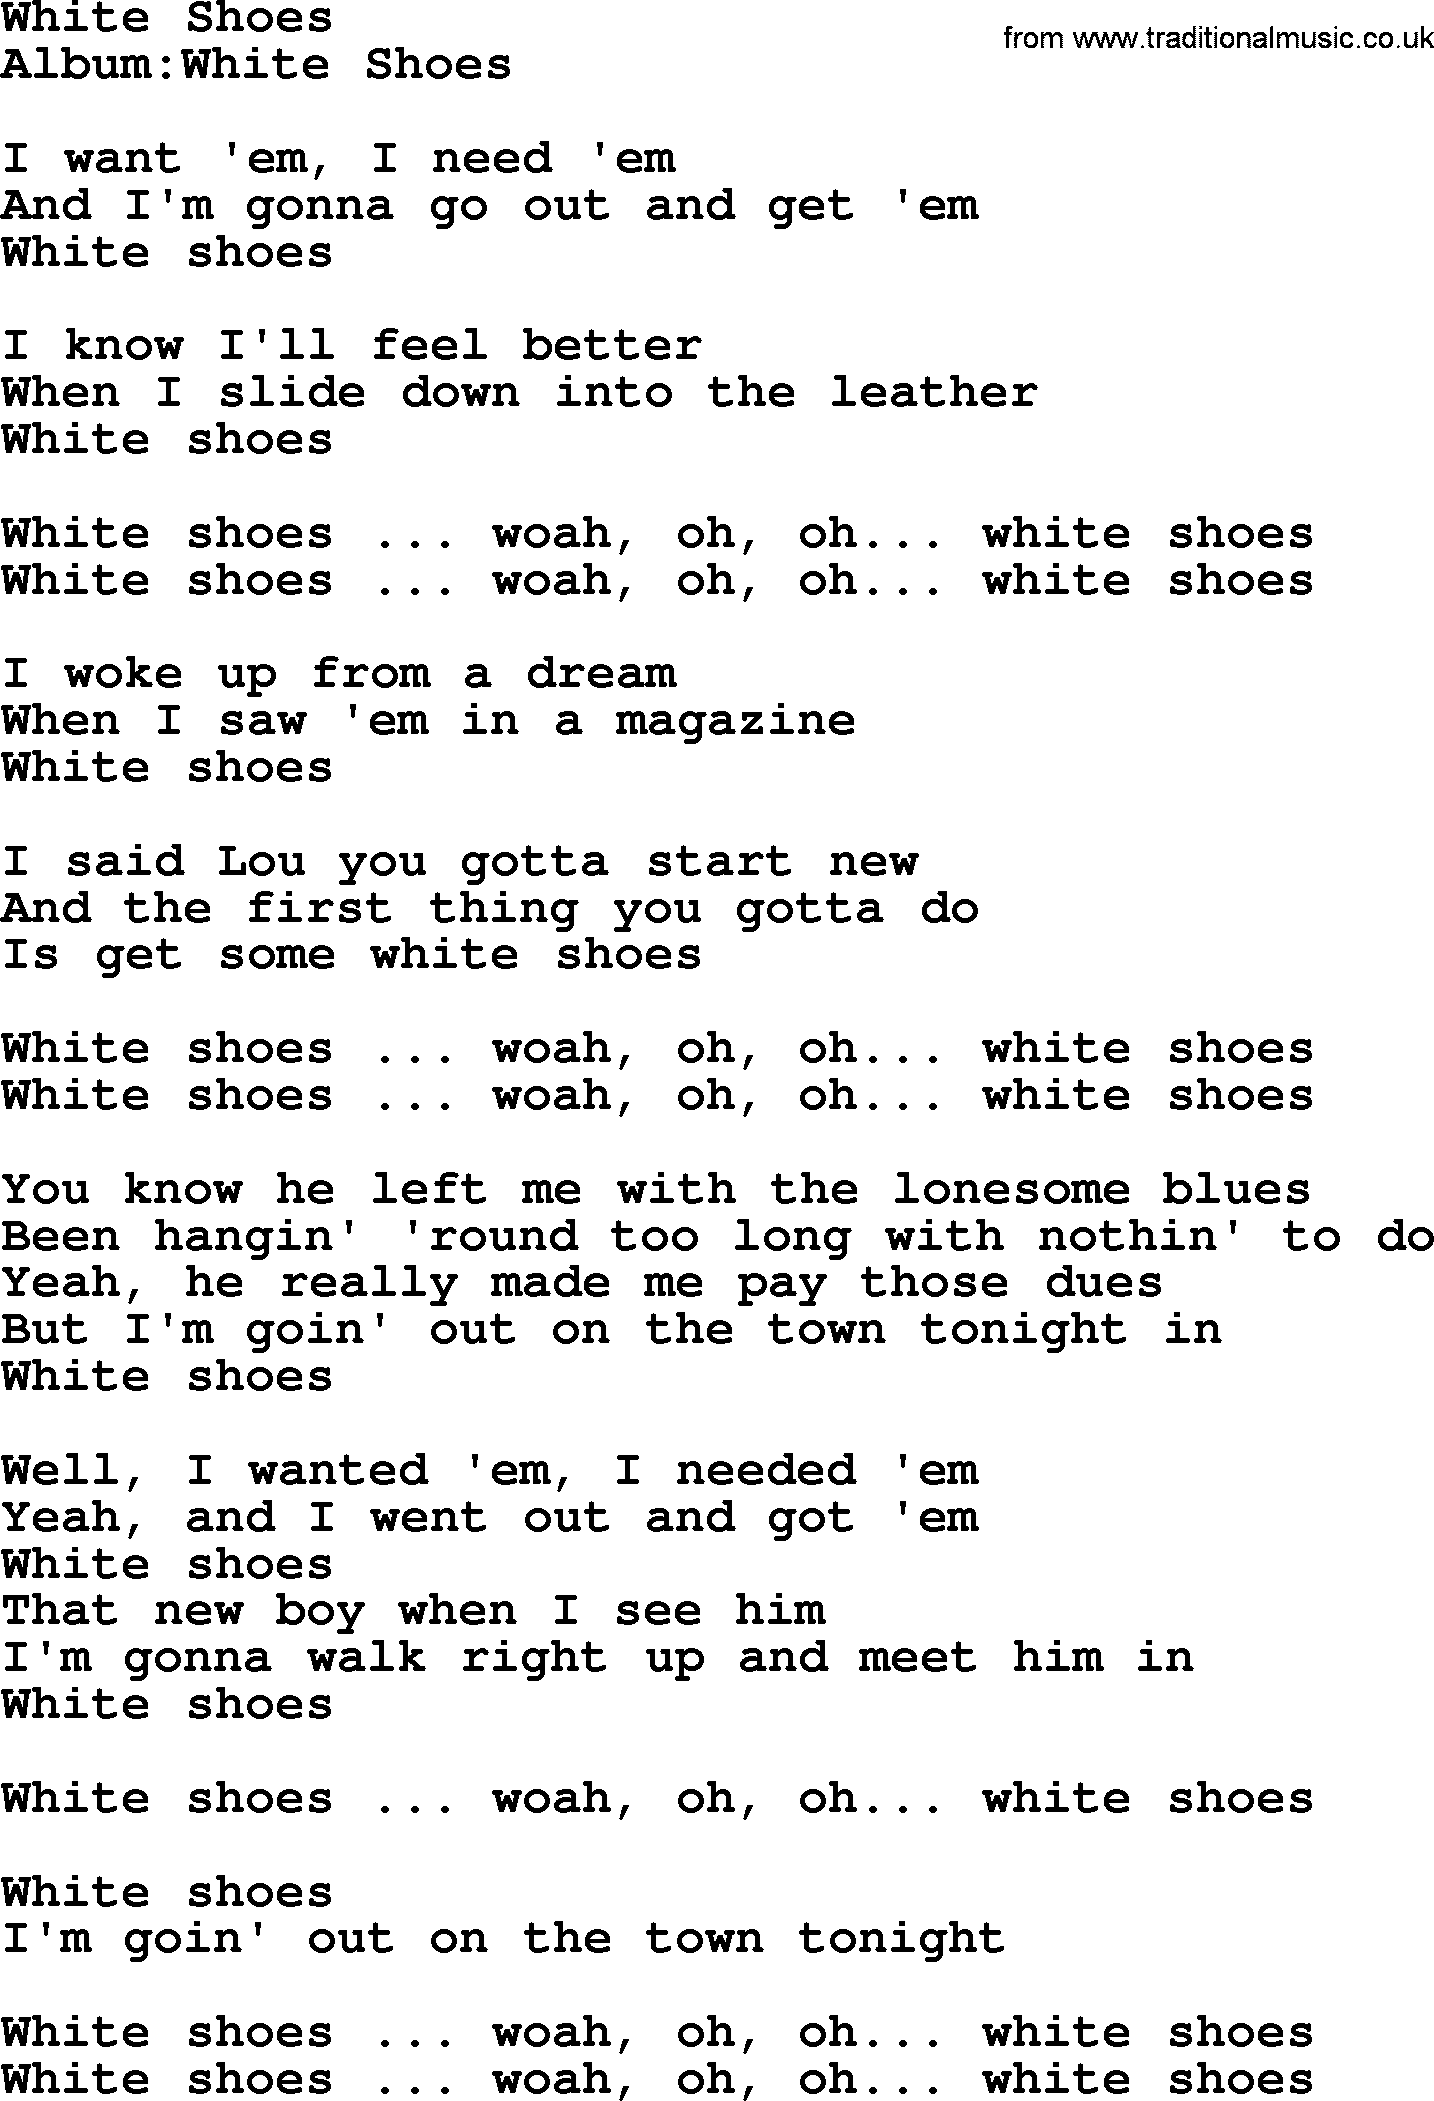 Emmylou Harris song: White Shoes lyrics